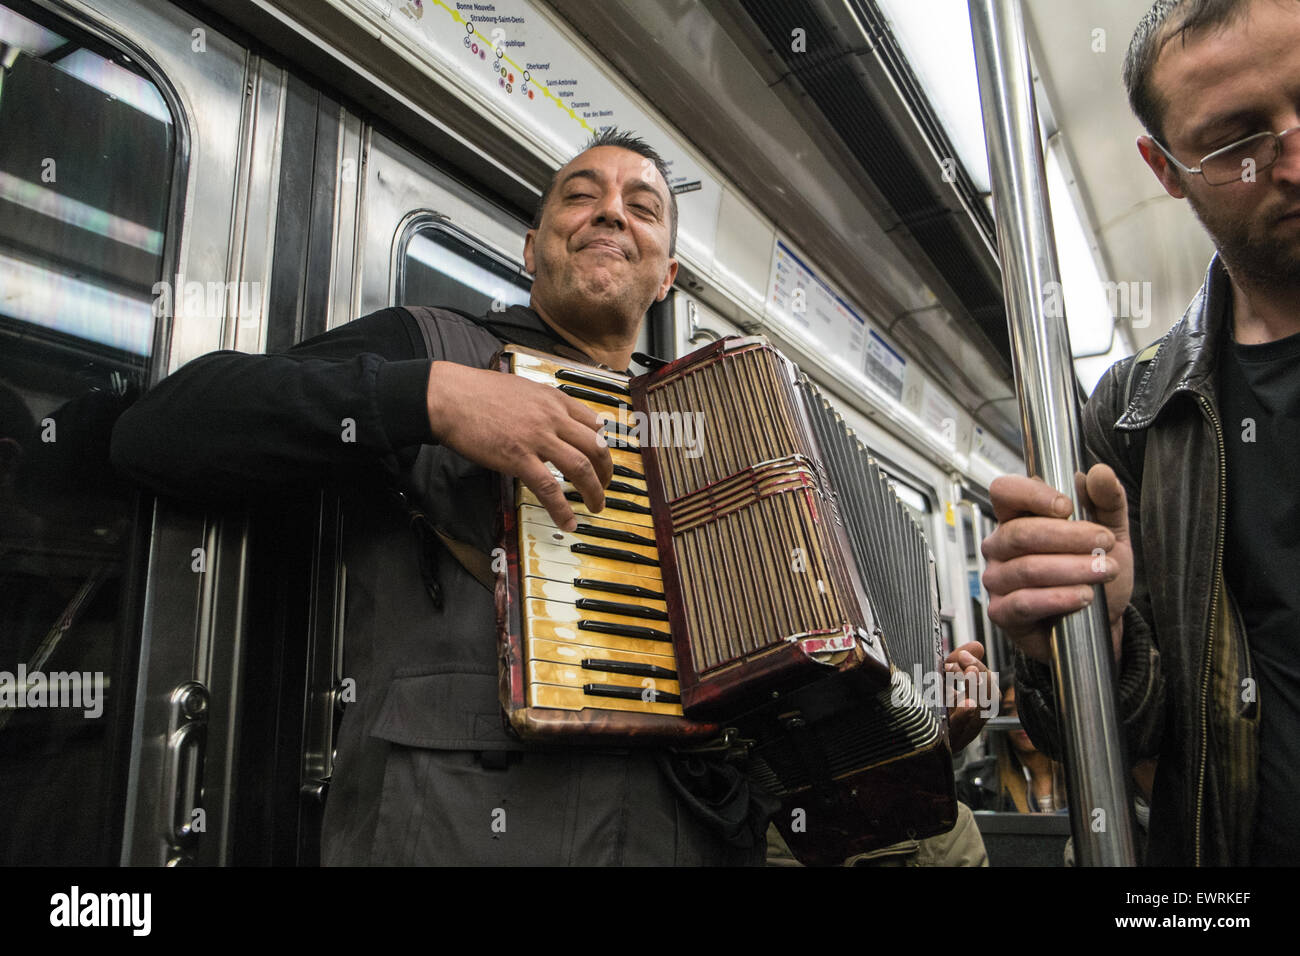 Musicien jouant de l'accordéon sur le métro, Paris, France,Europe,européen.Français,musique,transport,transport,train,métro, Banque D'Images